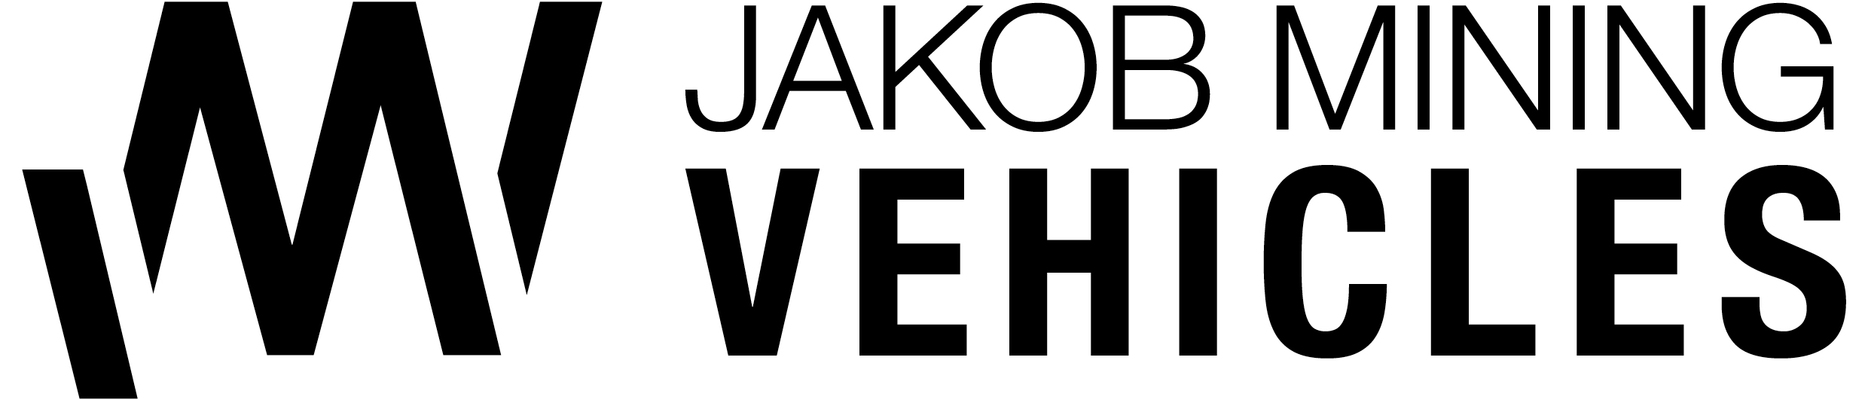 Profile image for Jakob Mining Vehicles